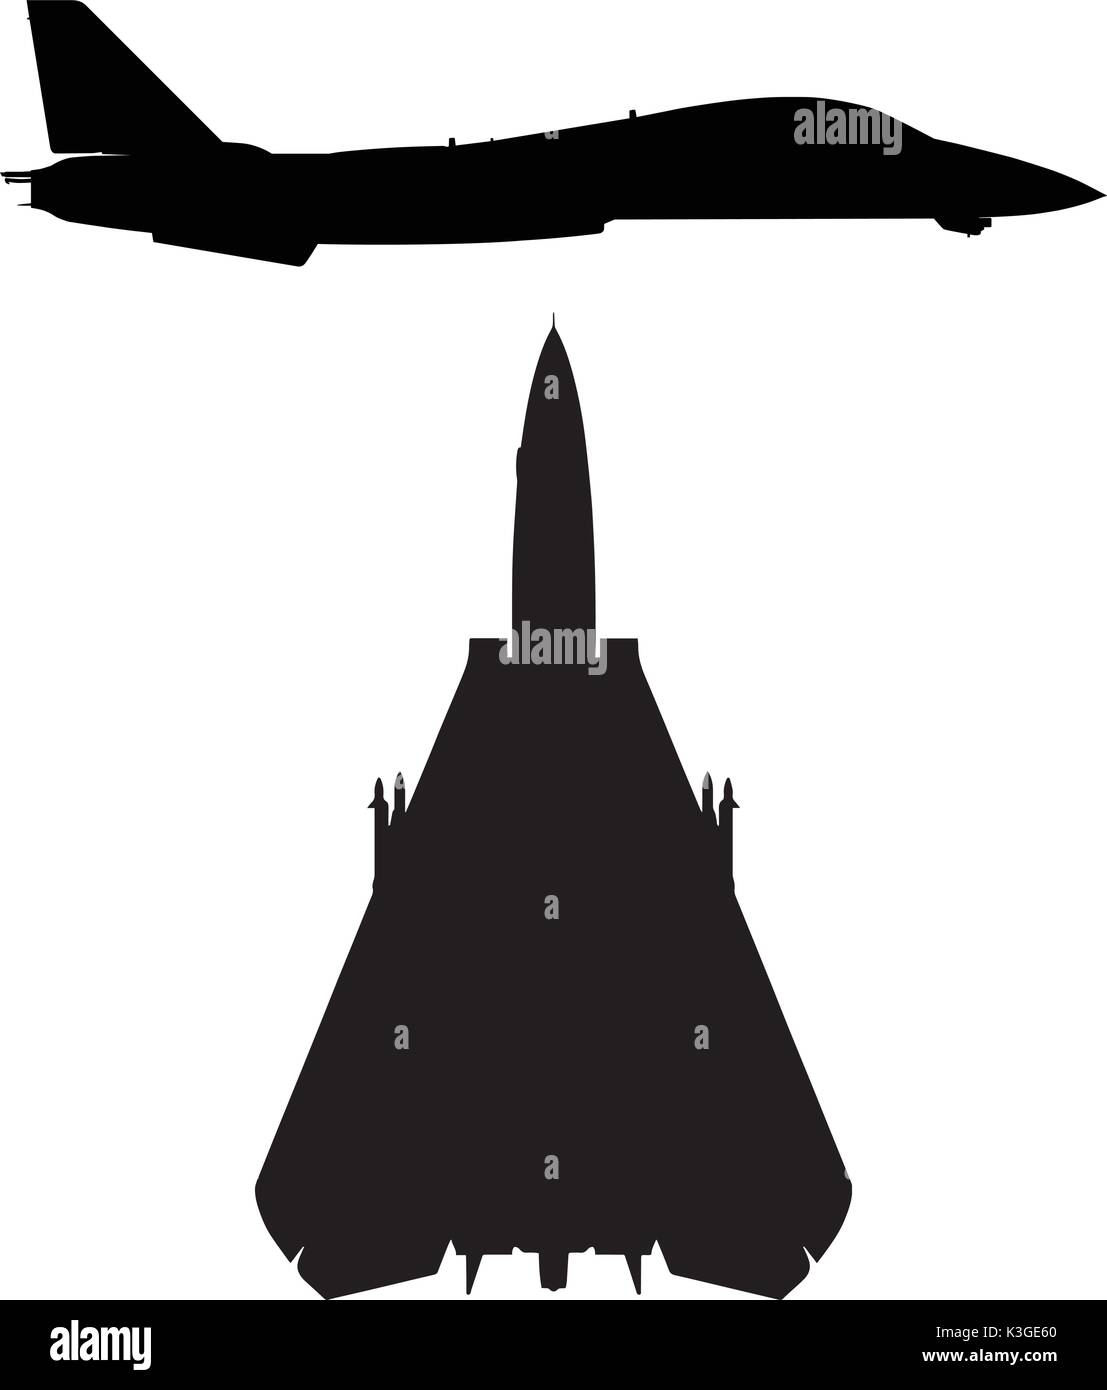 Militärische fegte-wing Fighter Jet Silhouette Stock Vektor